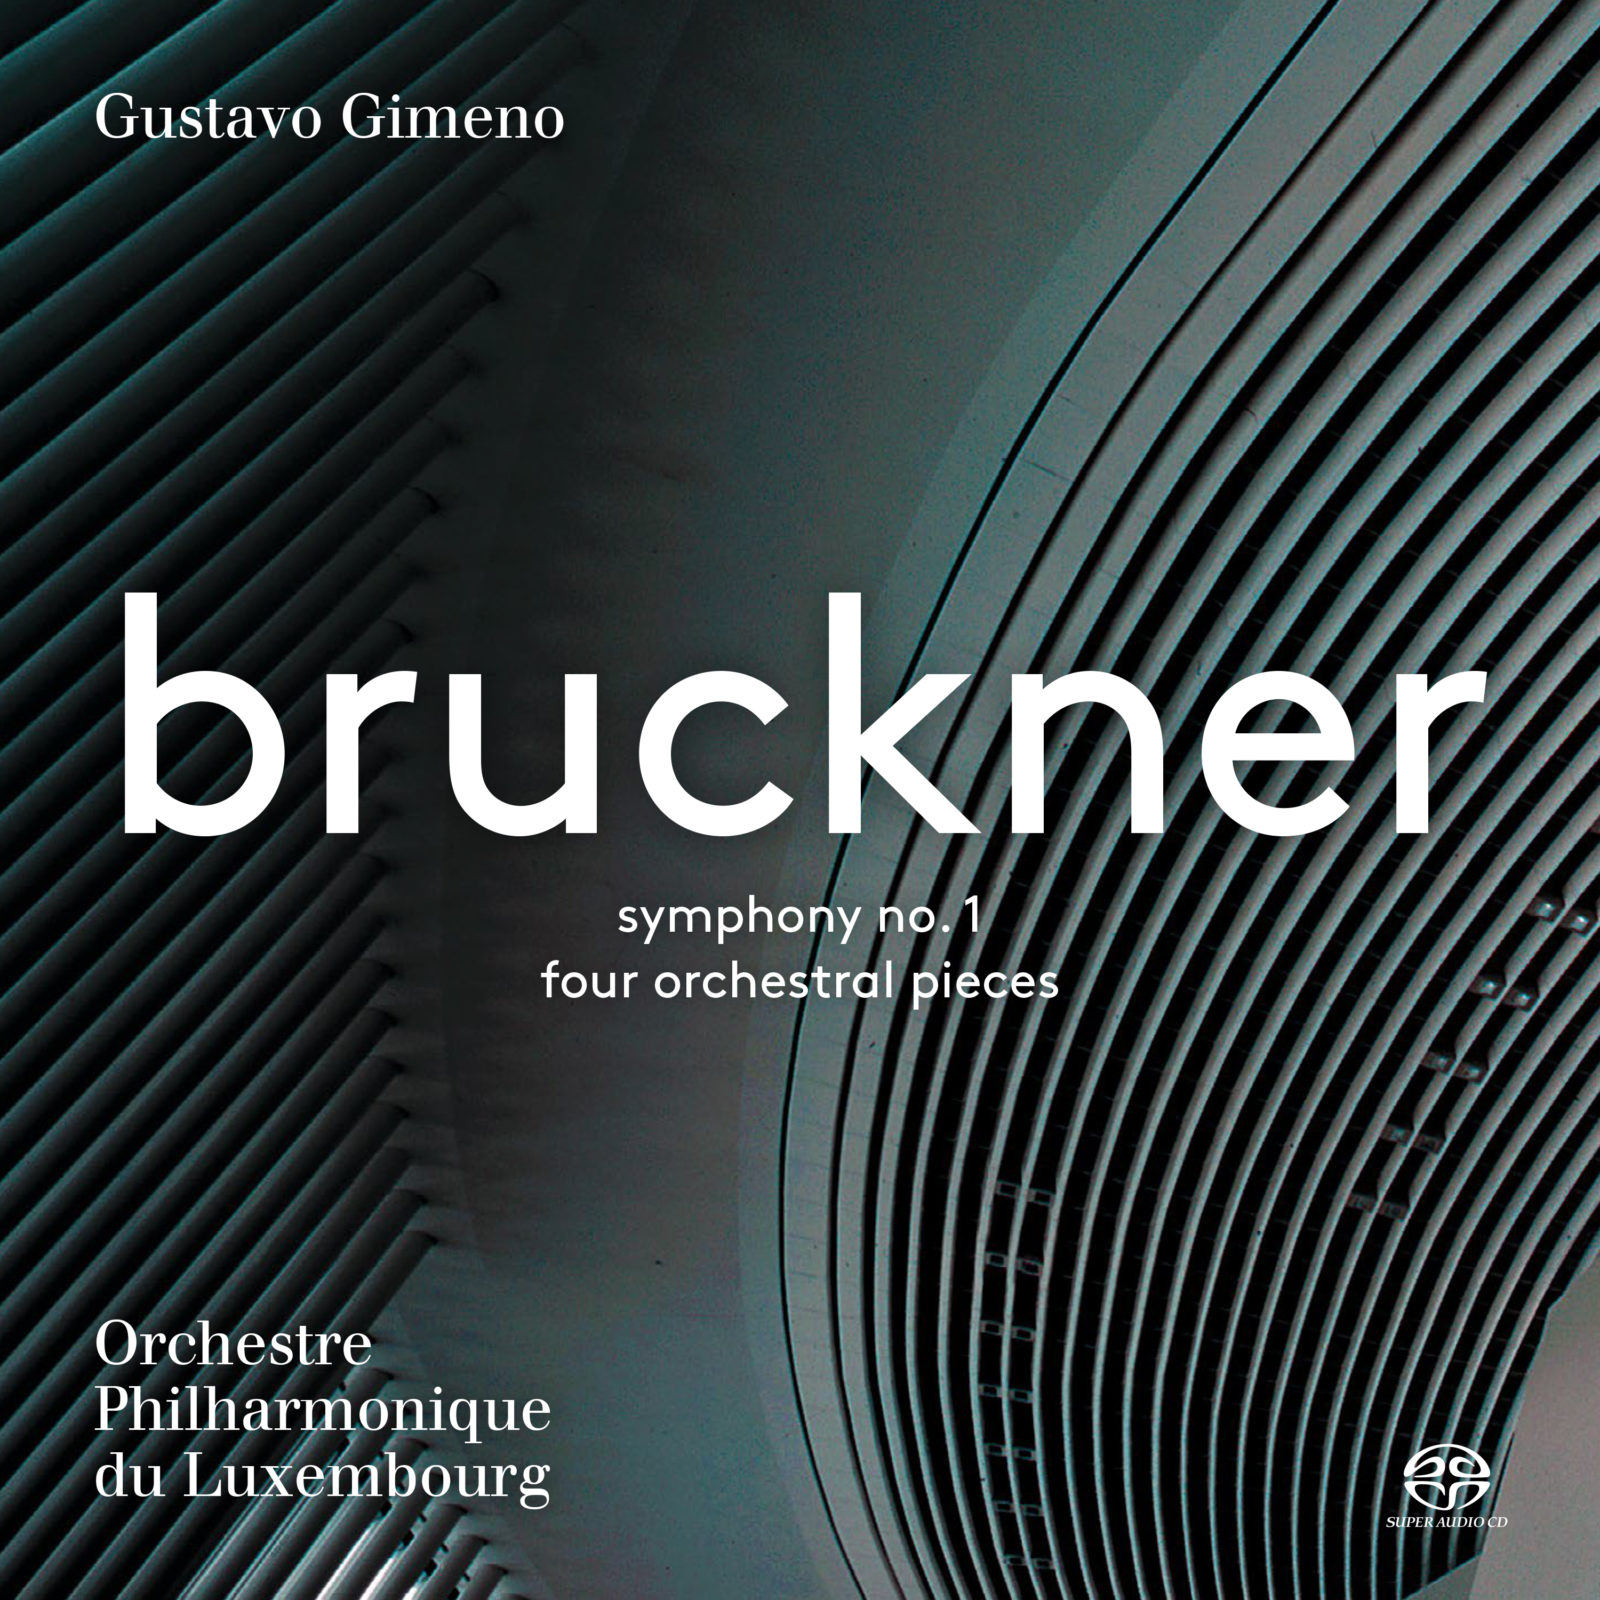 1866 Bruckner Symphonie n°1 